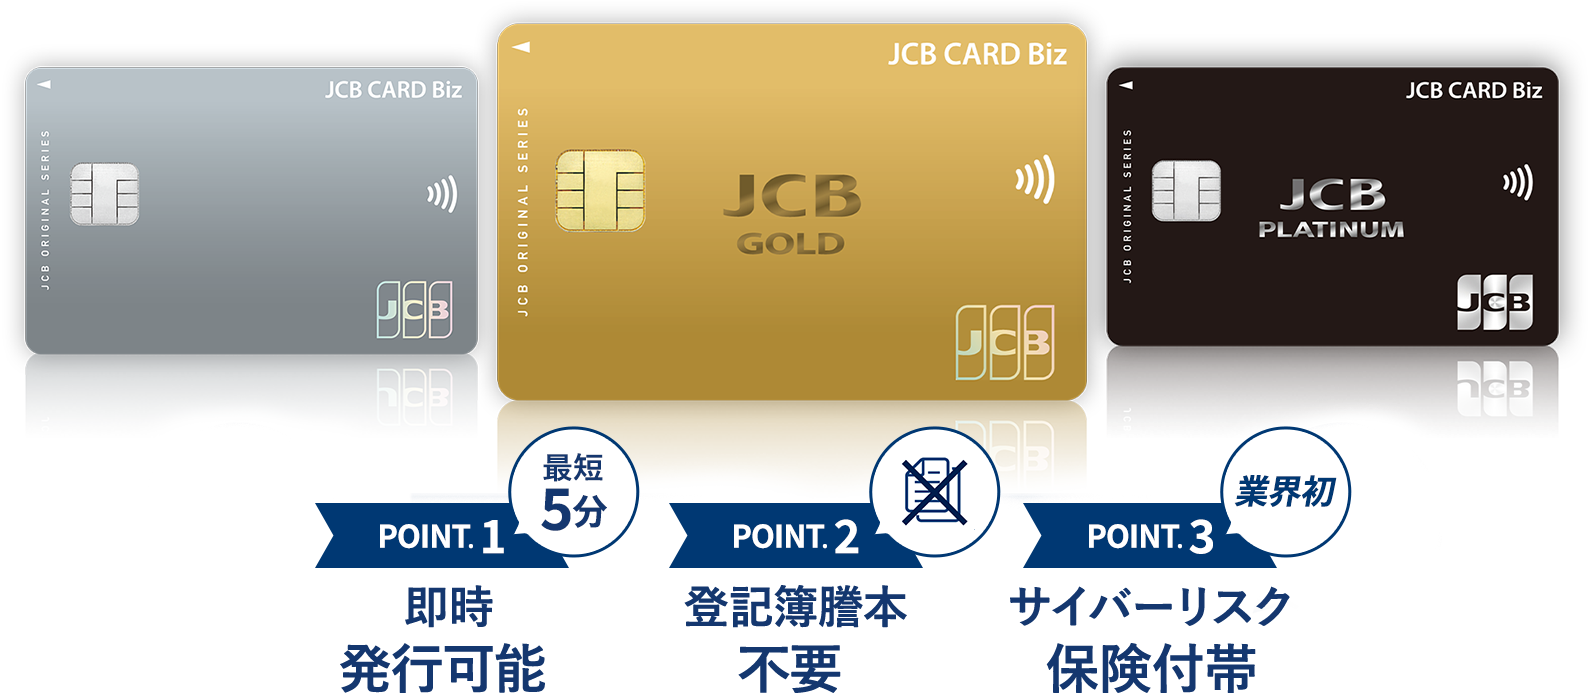 JCB 法人カード公式